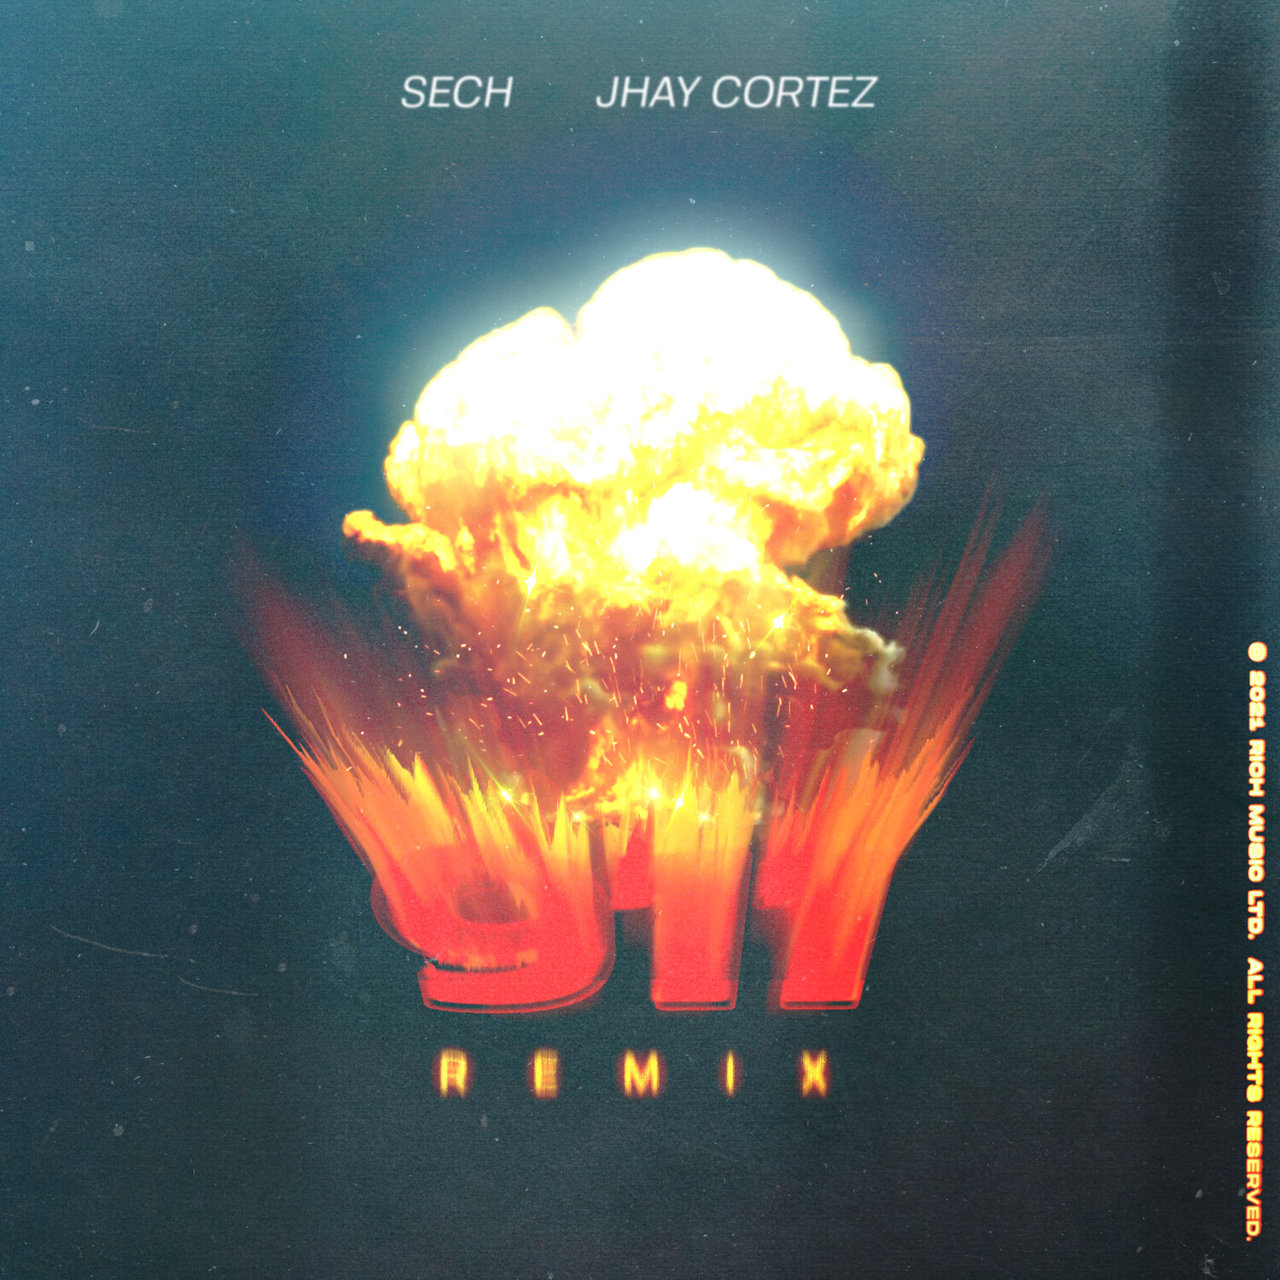 Sech - 911 (Remix) (ft. Jhay Cortez) (Cover)